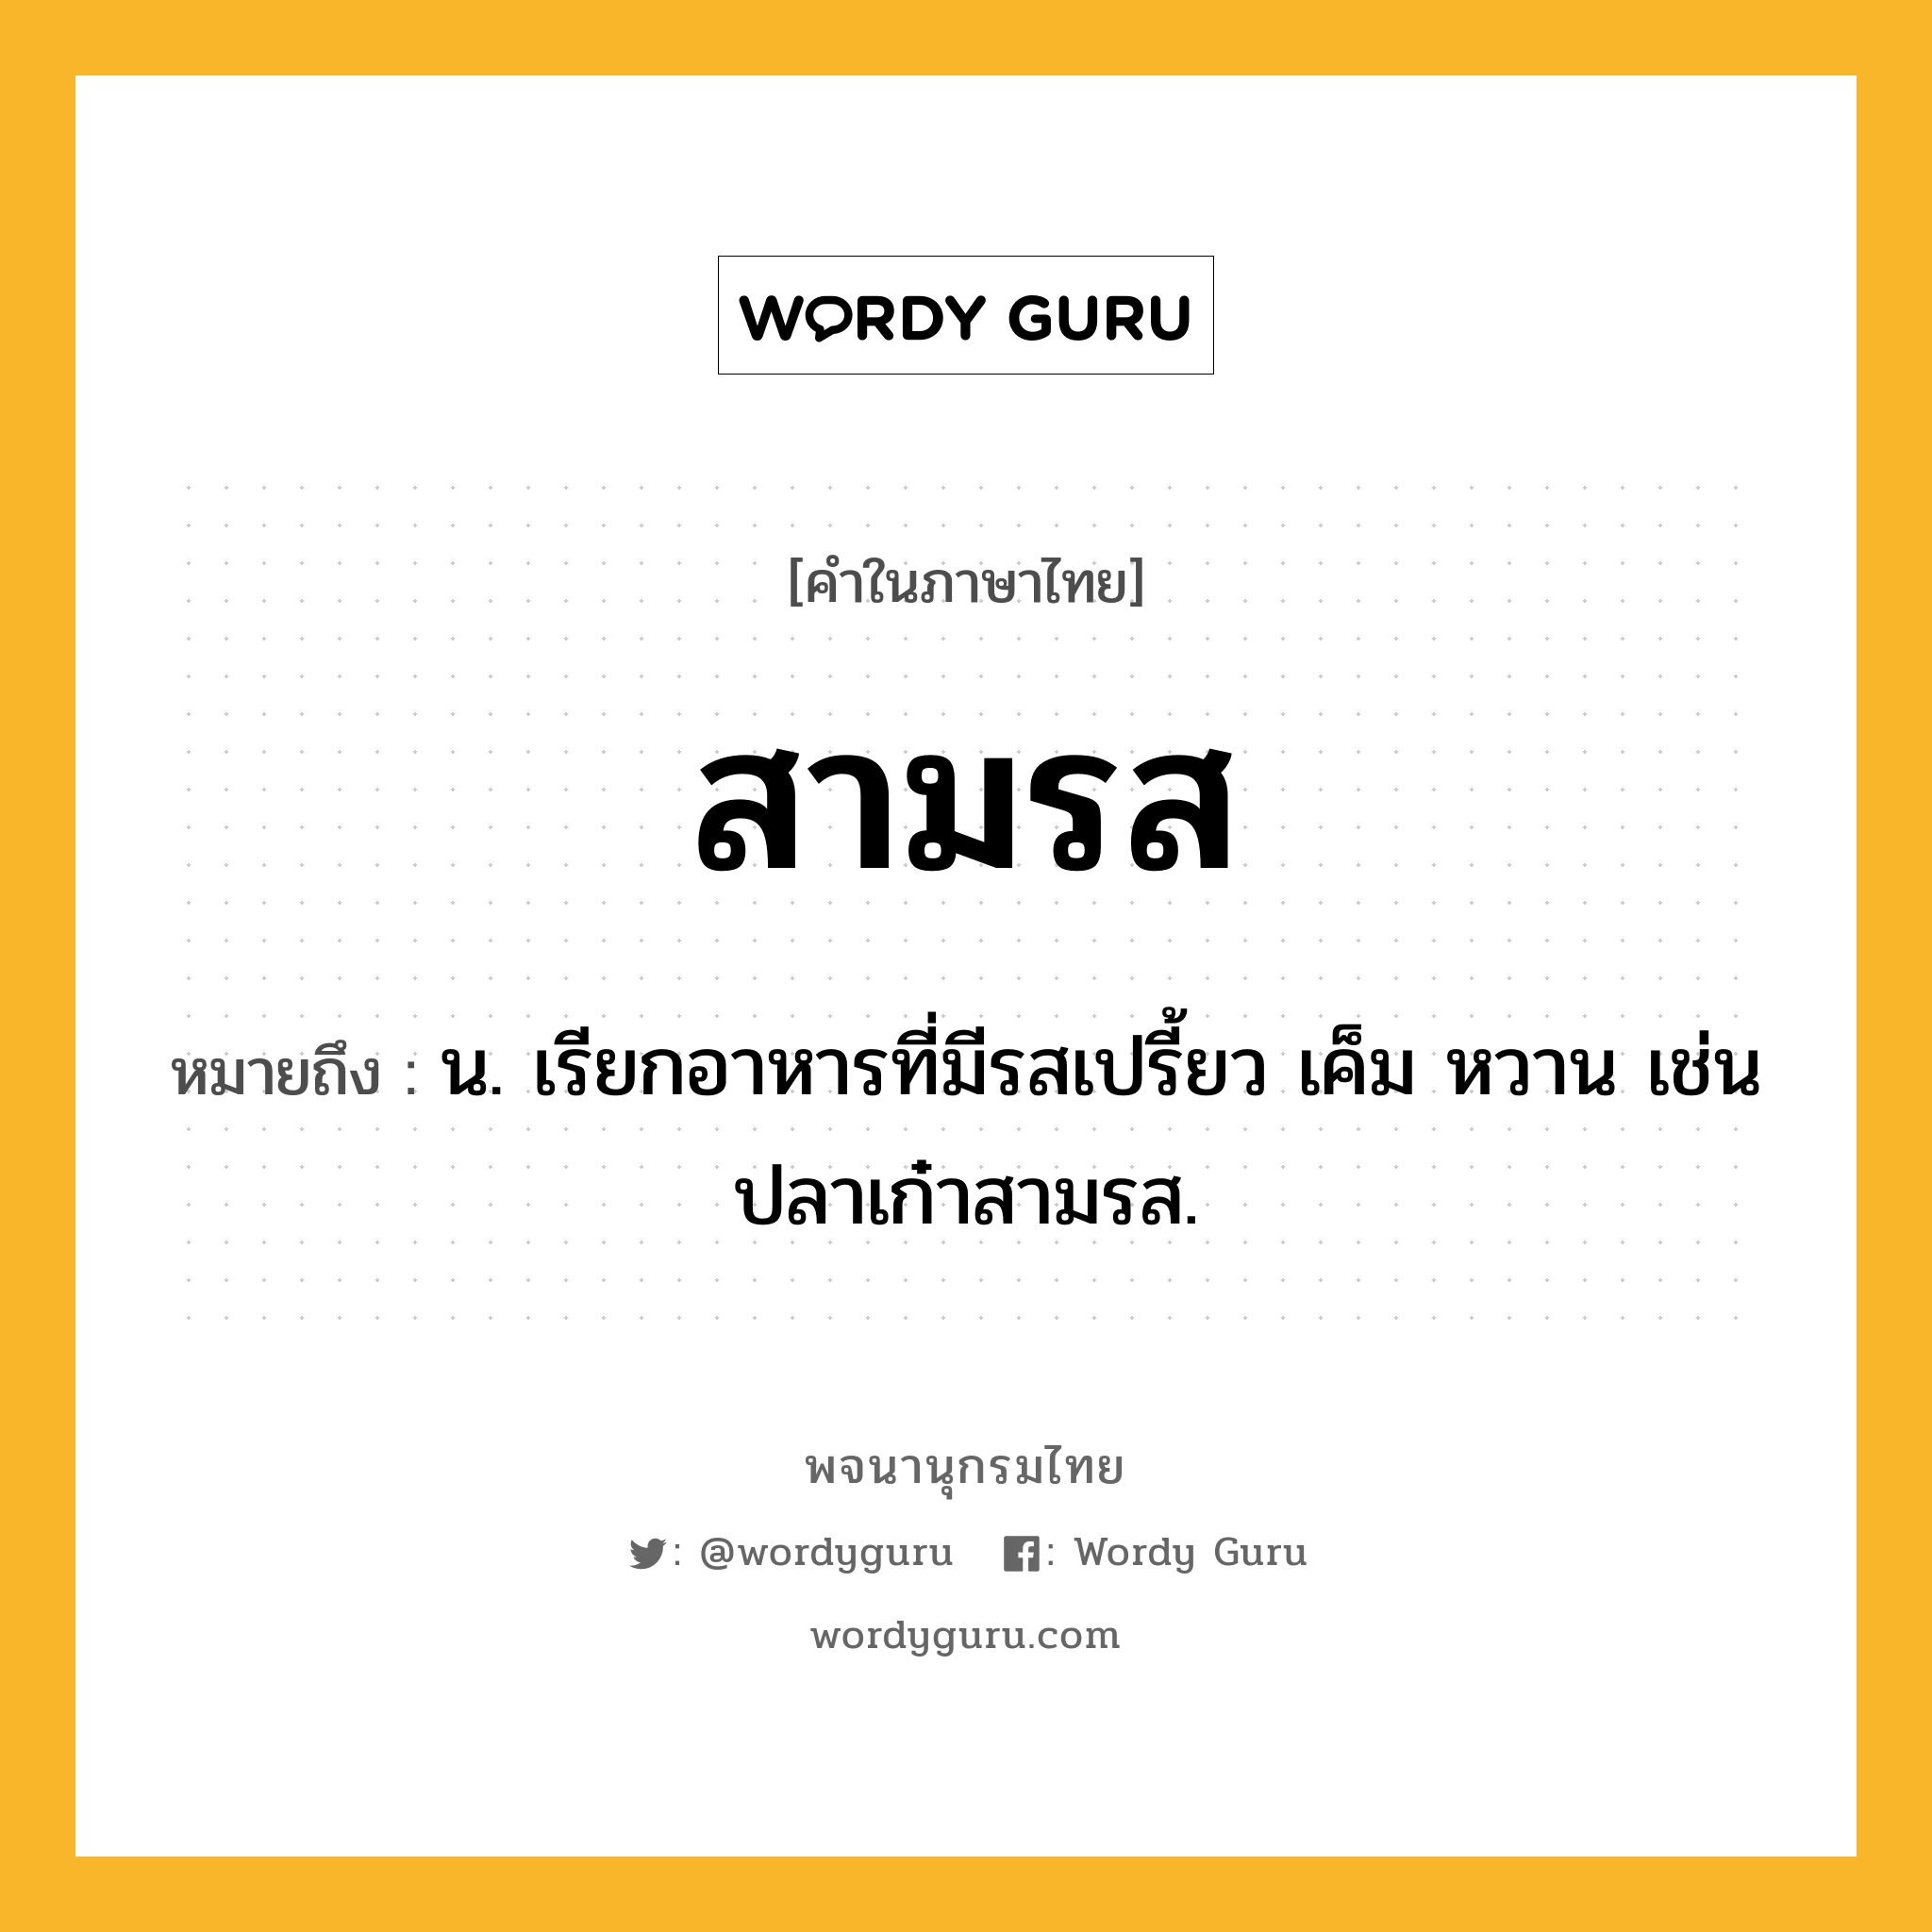 สามรส หมายถึงอะไร?, คำในภาษาไทย สามรส หมายถึง น. เรียกอาหารที่มีรสเปรี้ยว เค็ม หวาน เช่น ปลาเก๋าสามรส.